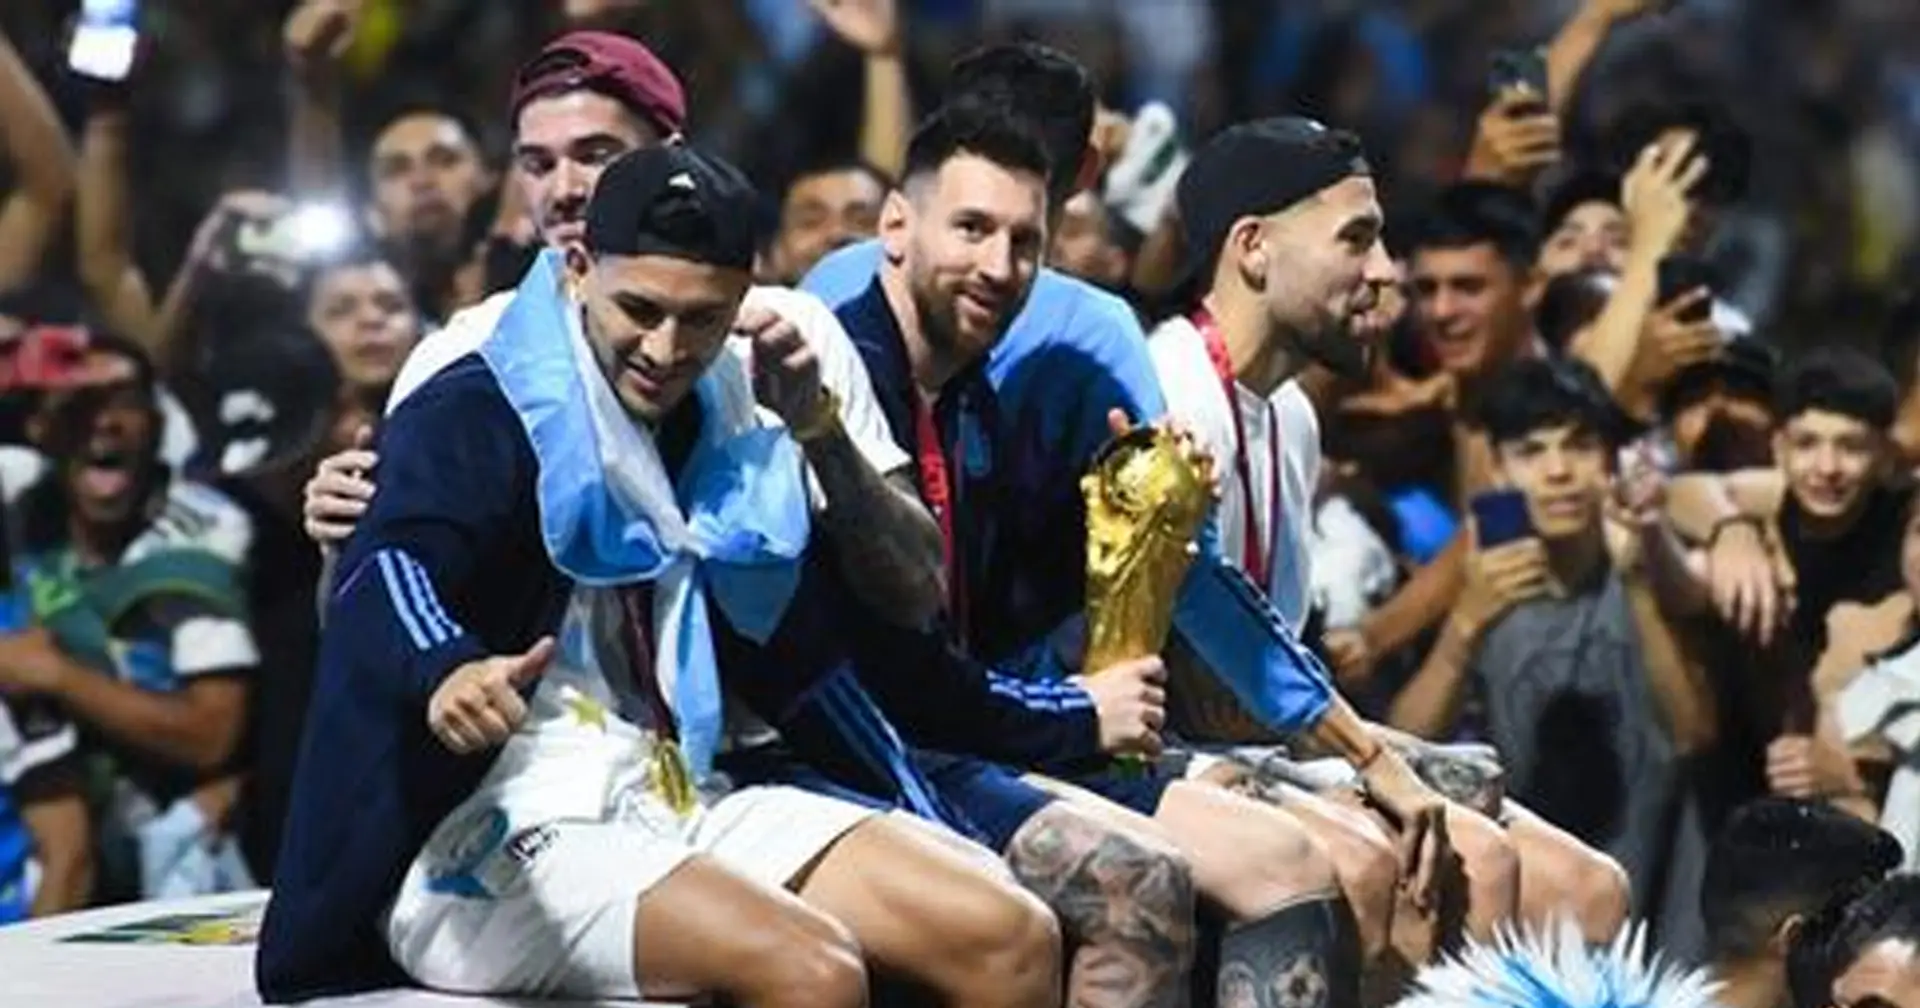 Messi und Co. wären in Buenos Aires fast in einen Draht gerannt, als sie auf dem Dach eines Busses saßen